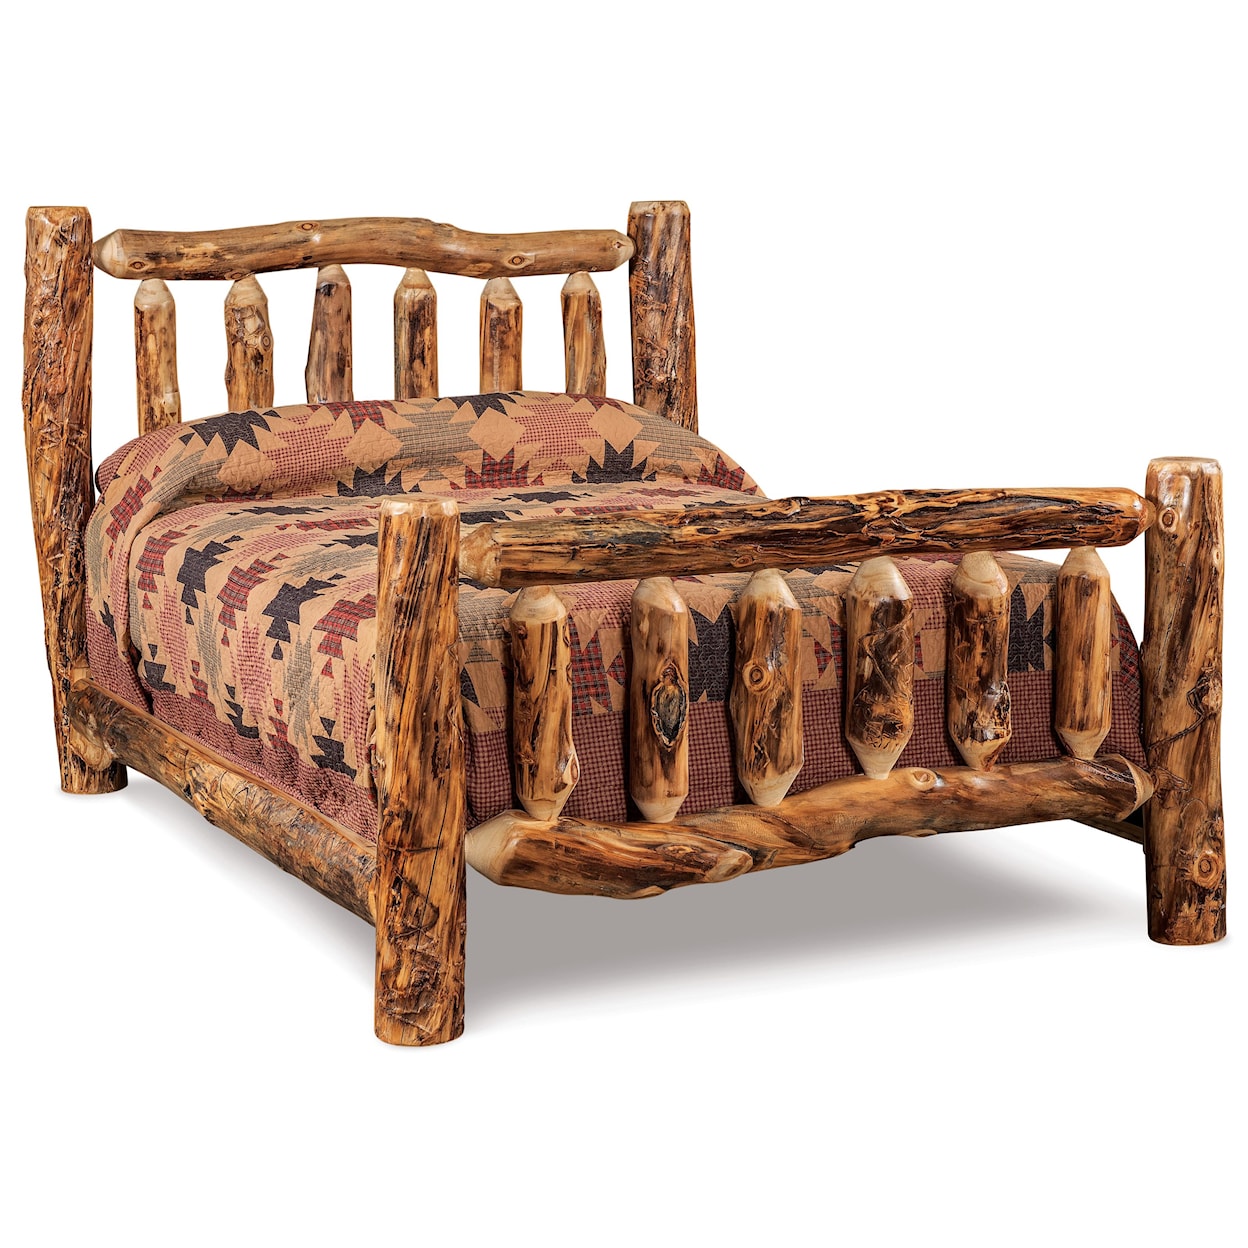 Fireside Log Furniture Log Bedroom Queen Log Bed